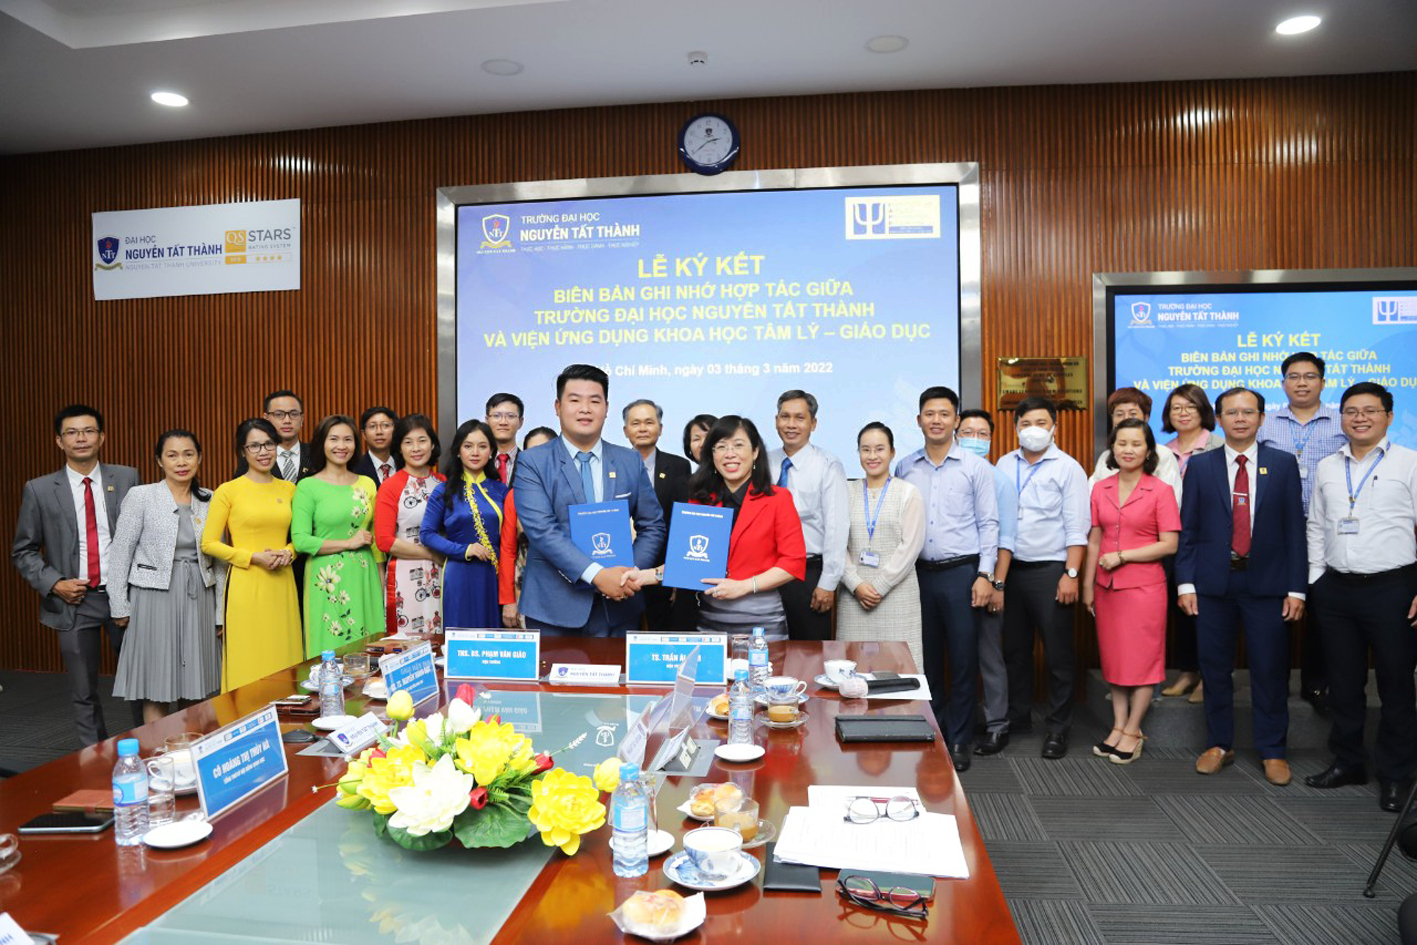 Đại học Nguyễn Tất Thành ký kết hợp tác với Viện Ứng dụng Khoa học Tâm lý Giáo dục -  Ảnh: NTTU